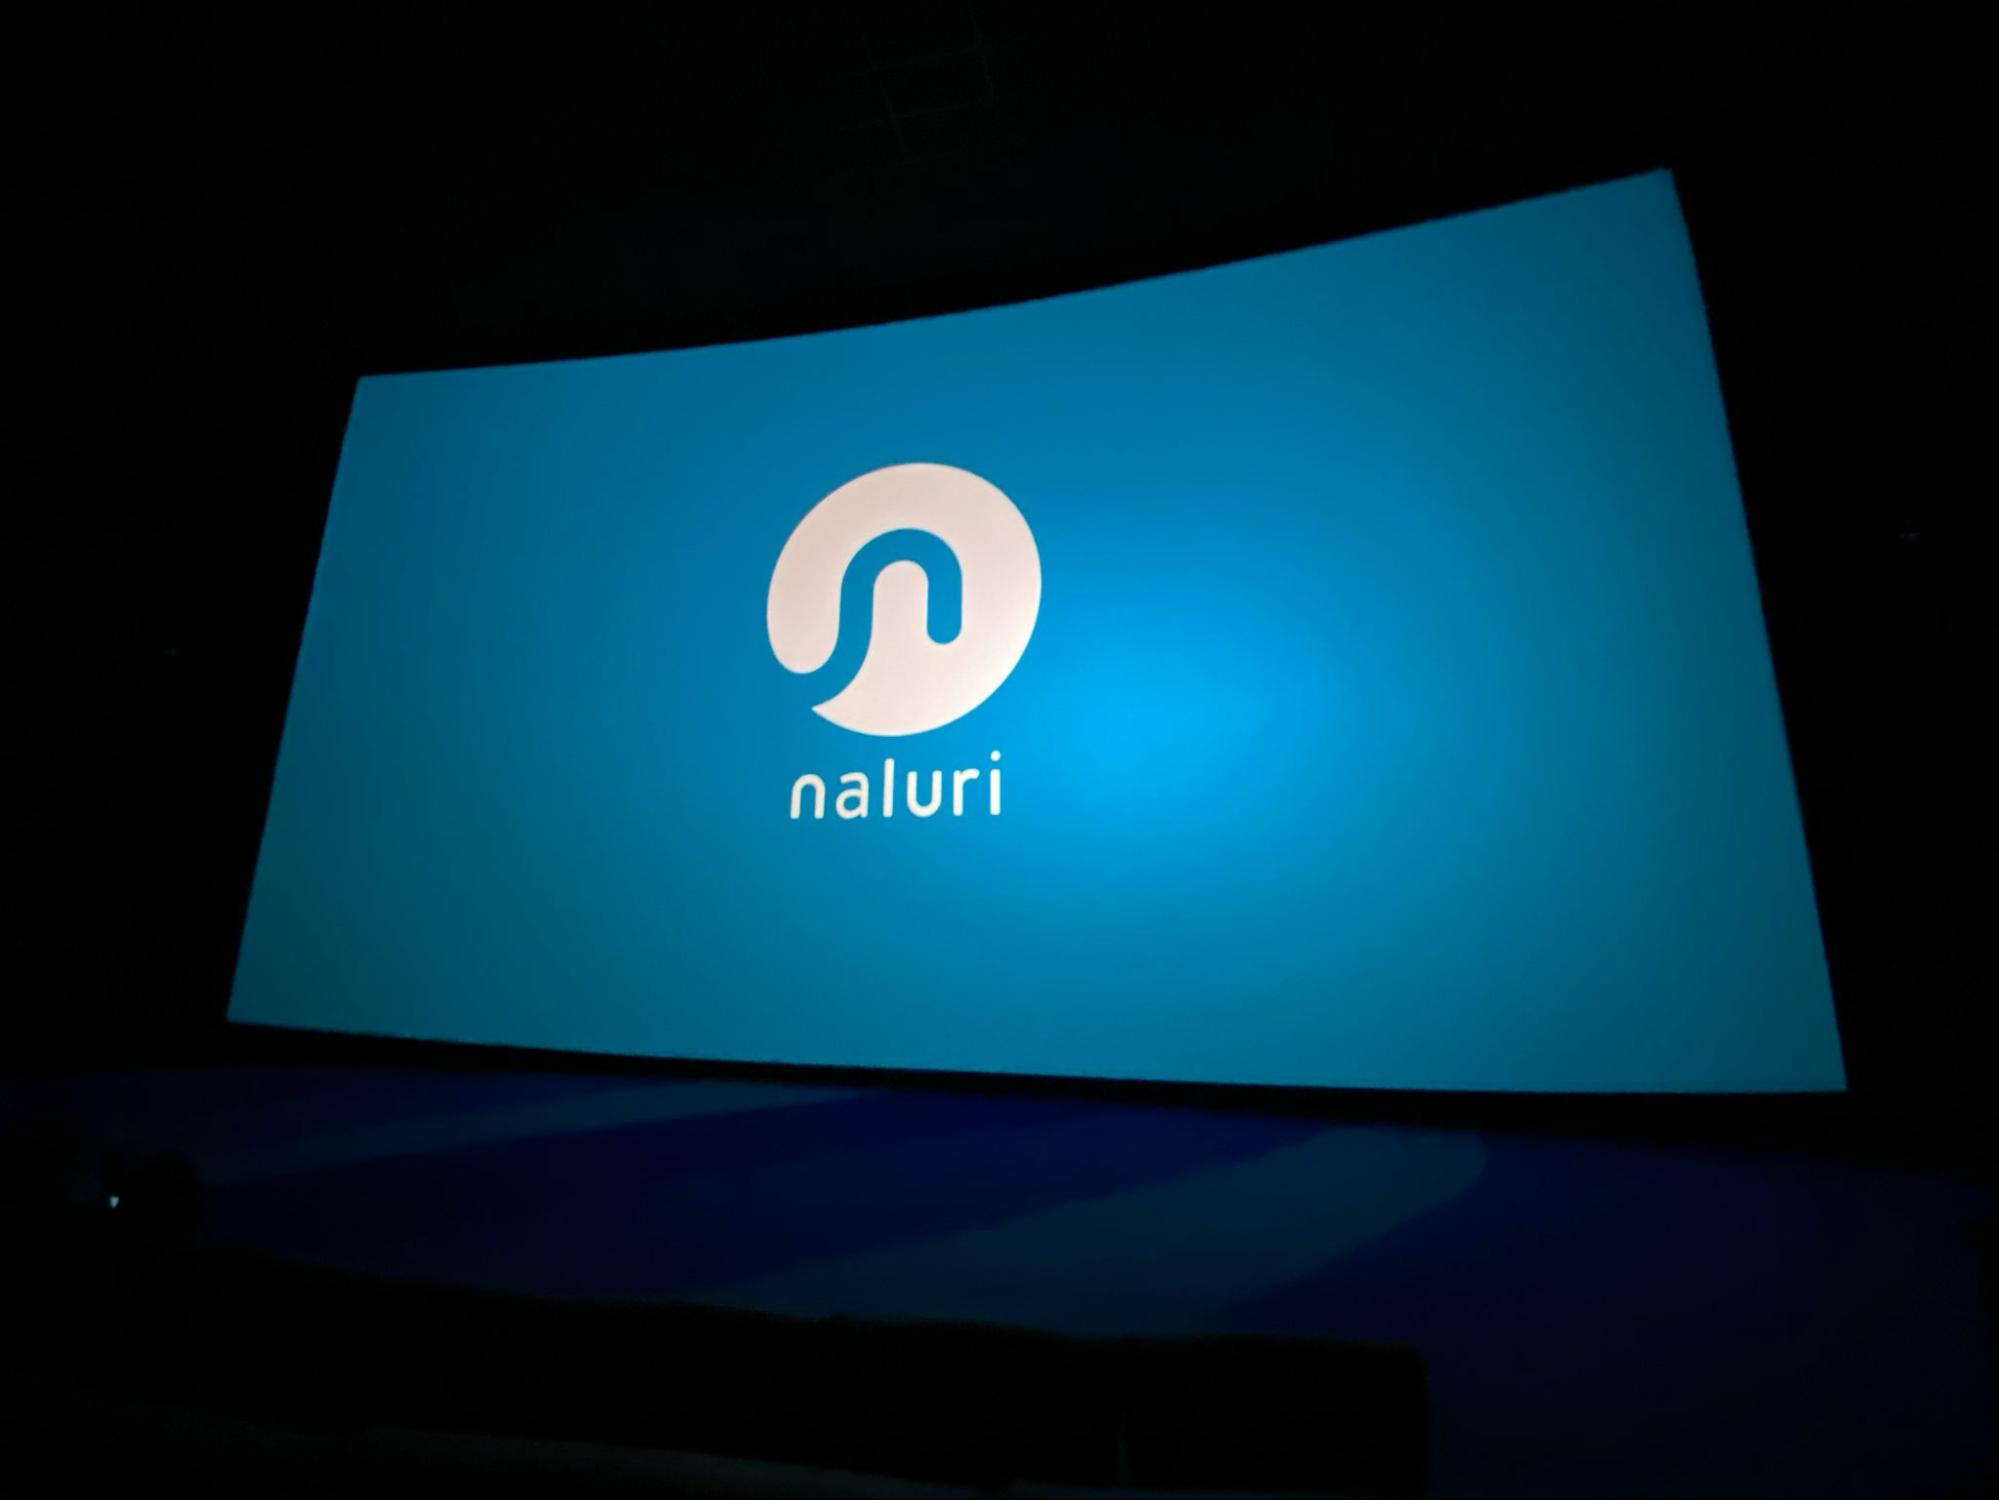 The Naluri Logo on a Cinema Screen